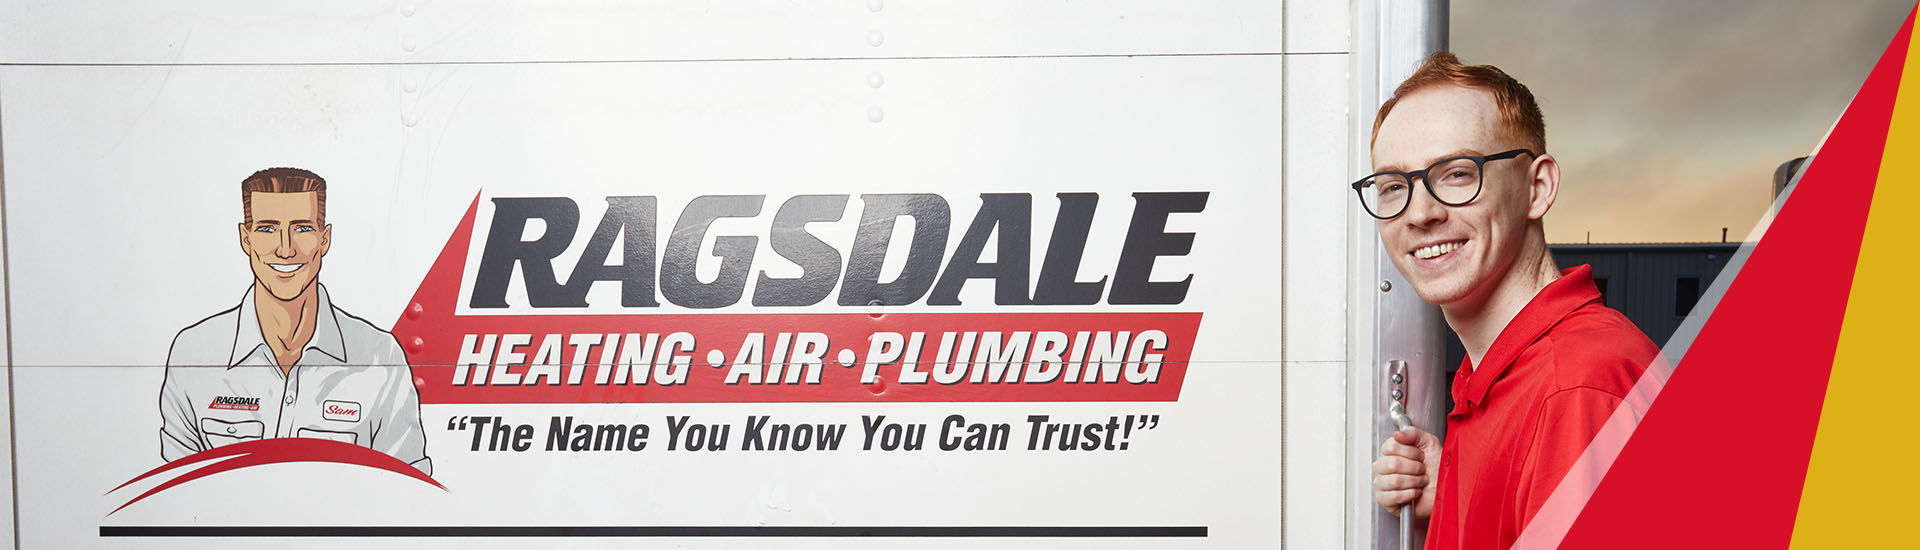 Ragsdale Heating, Air, Plumbing & Electrical in Atlanta